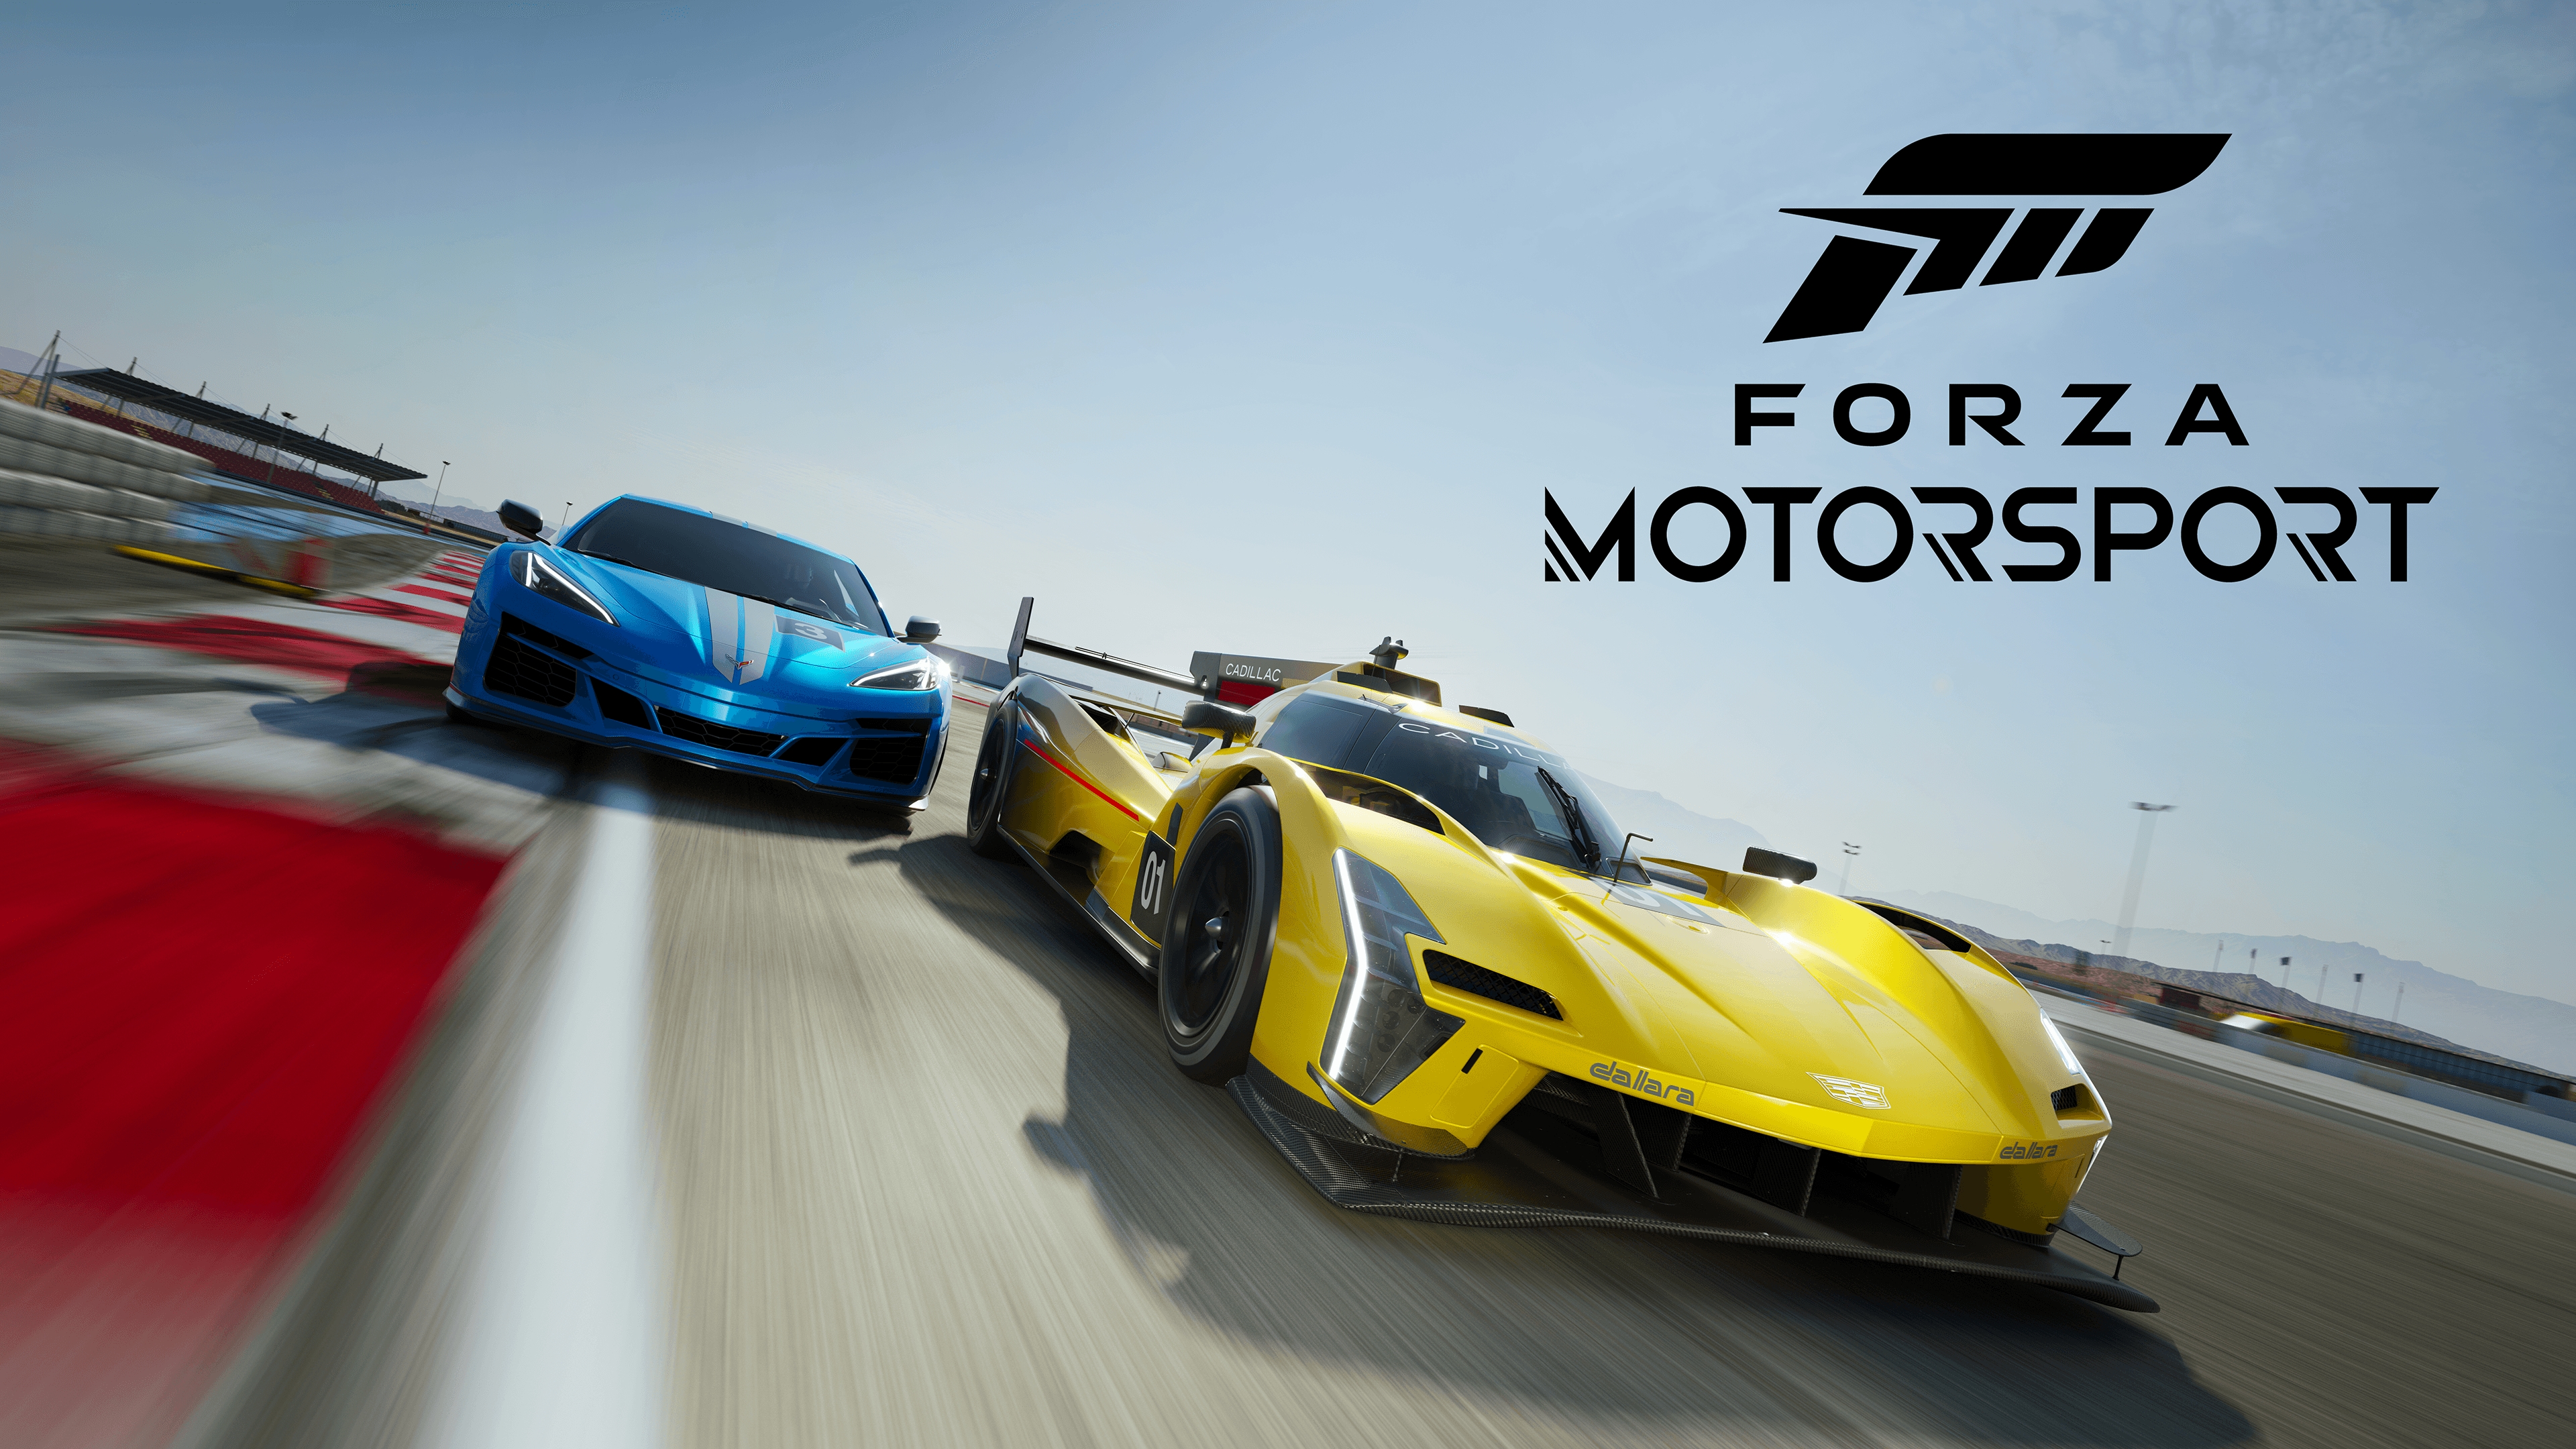 Gentleman internettet mængde af salg Buy Forza Motorsport (PC / Xbox Series X|S) Microsoft Store